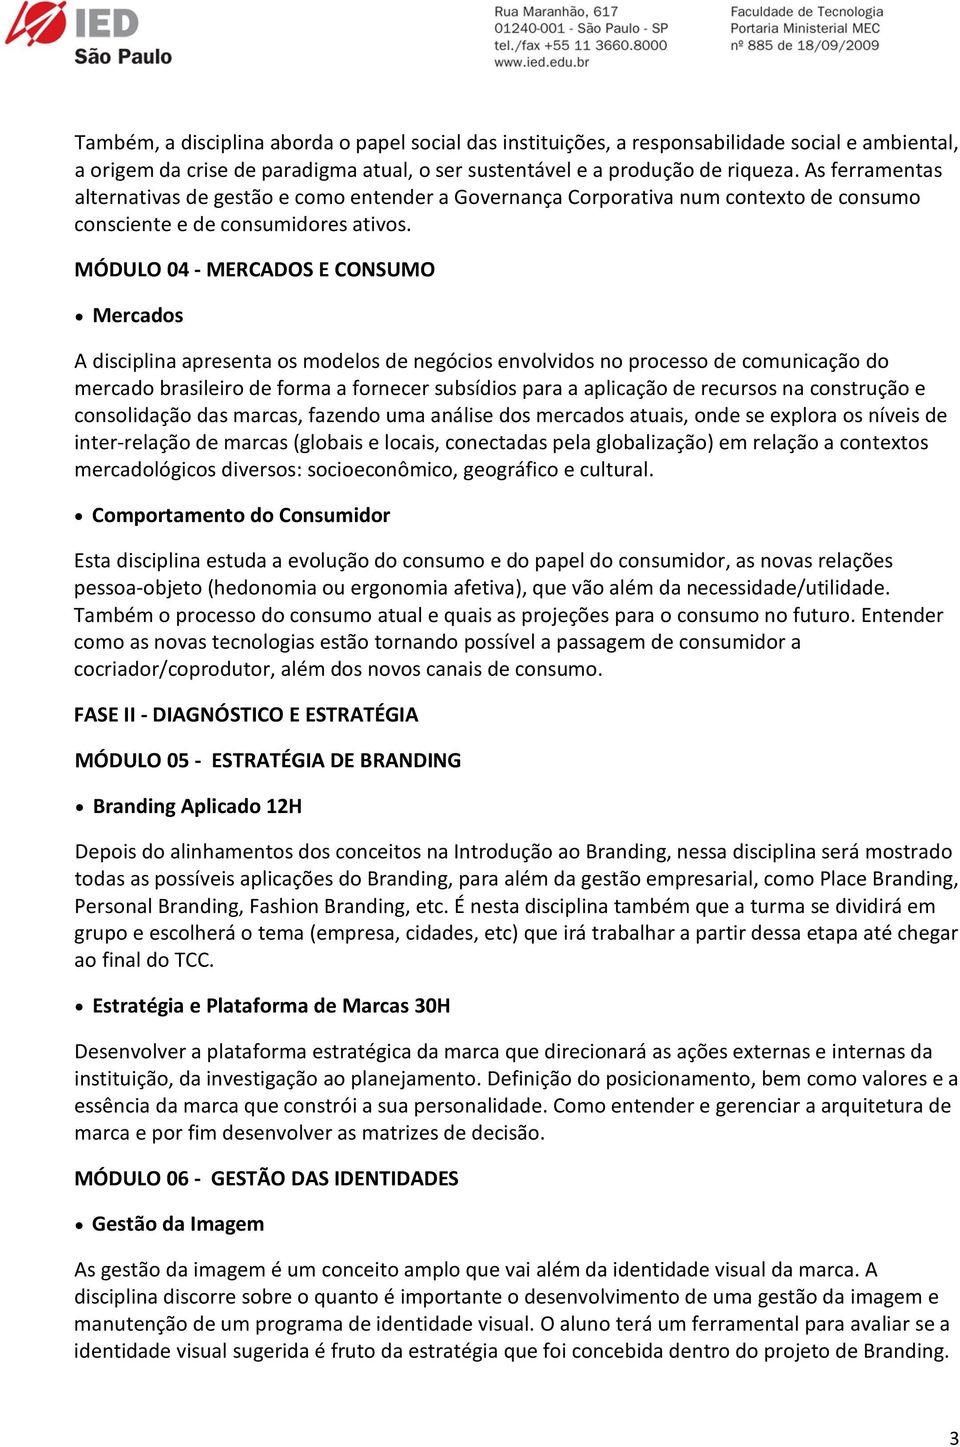 MÓDULO 04 - MERCADOS E CONSUMO Mercados A disciplina apresenta os modelos de negócios envolvidos no processo de comunicação do mercado brasileiro de forma a fornecer subsídios para a aplicação de